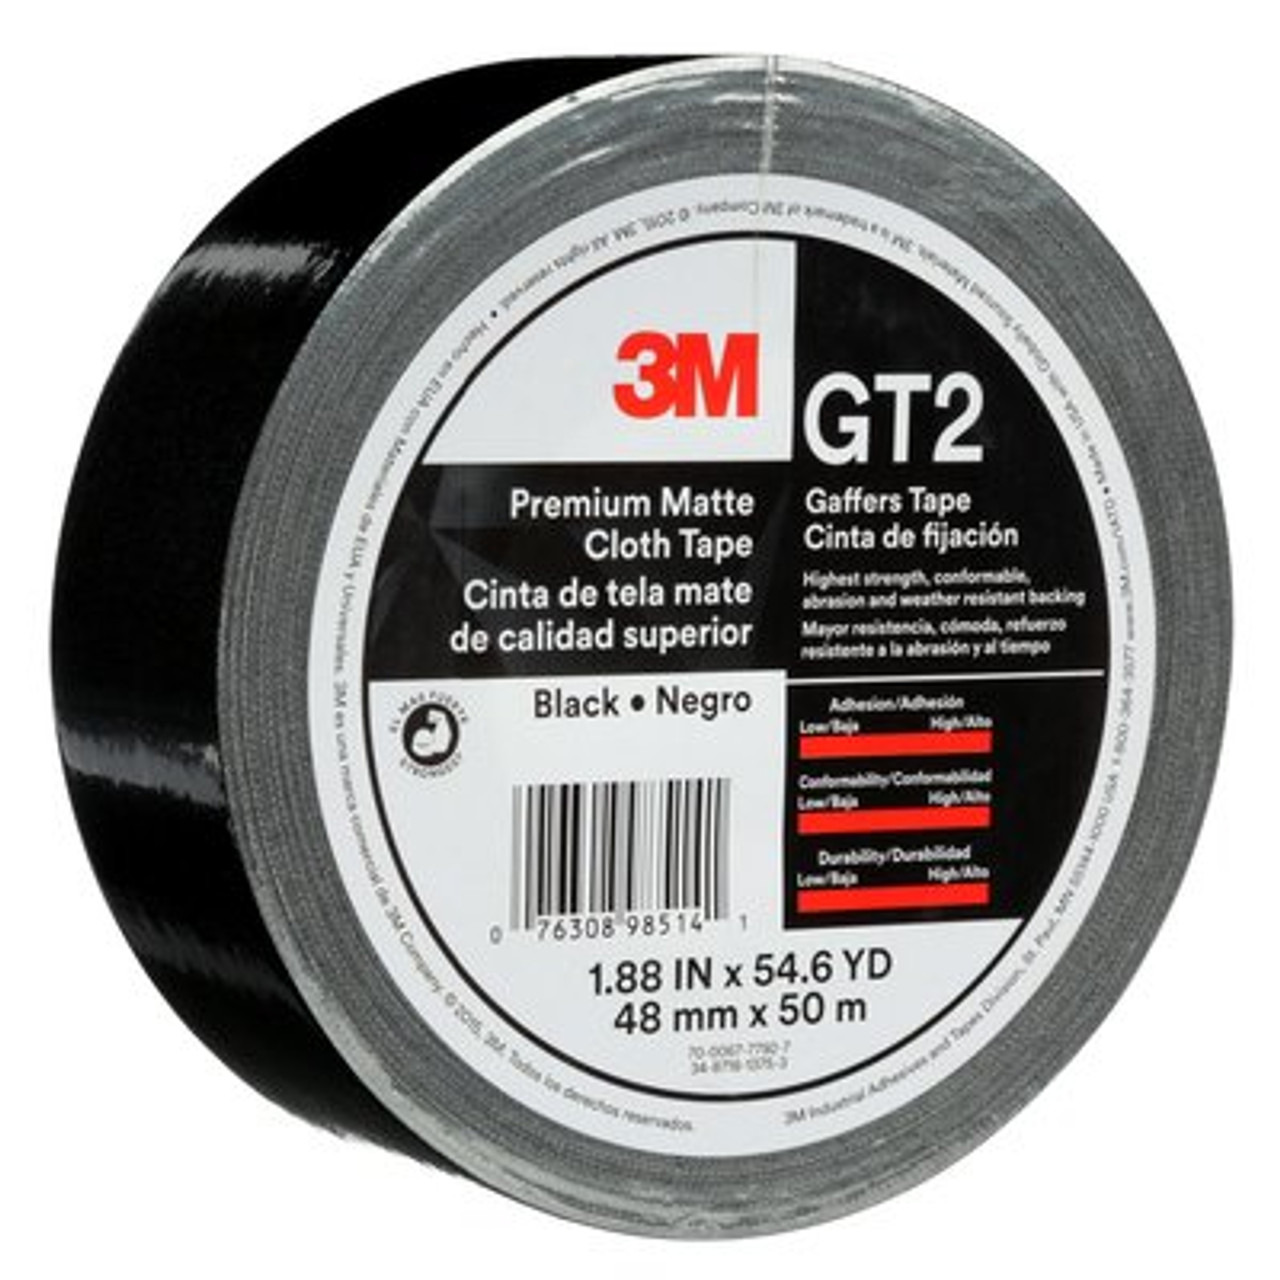 3M™ Premium Matte Cloth (Gaffers) Tape GT2, Black, 48 mm x 50 m, 11 mil